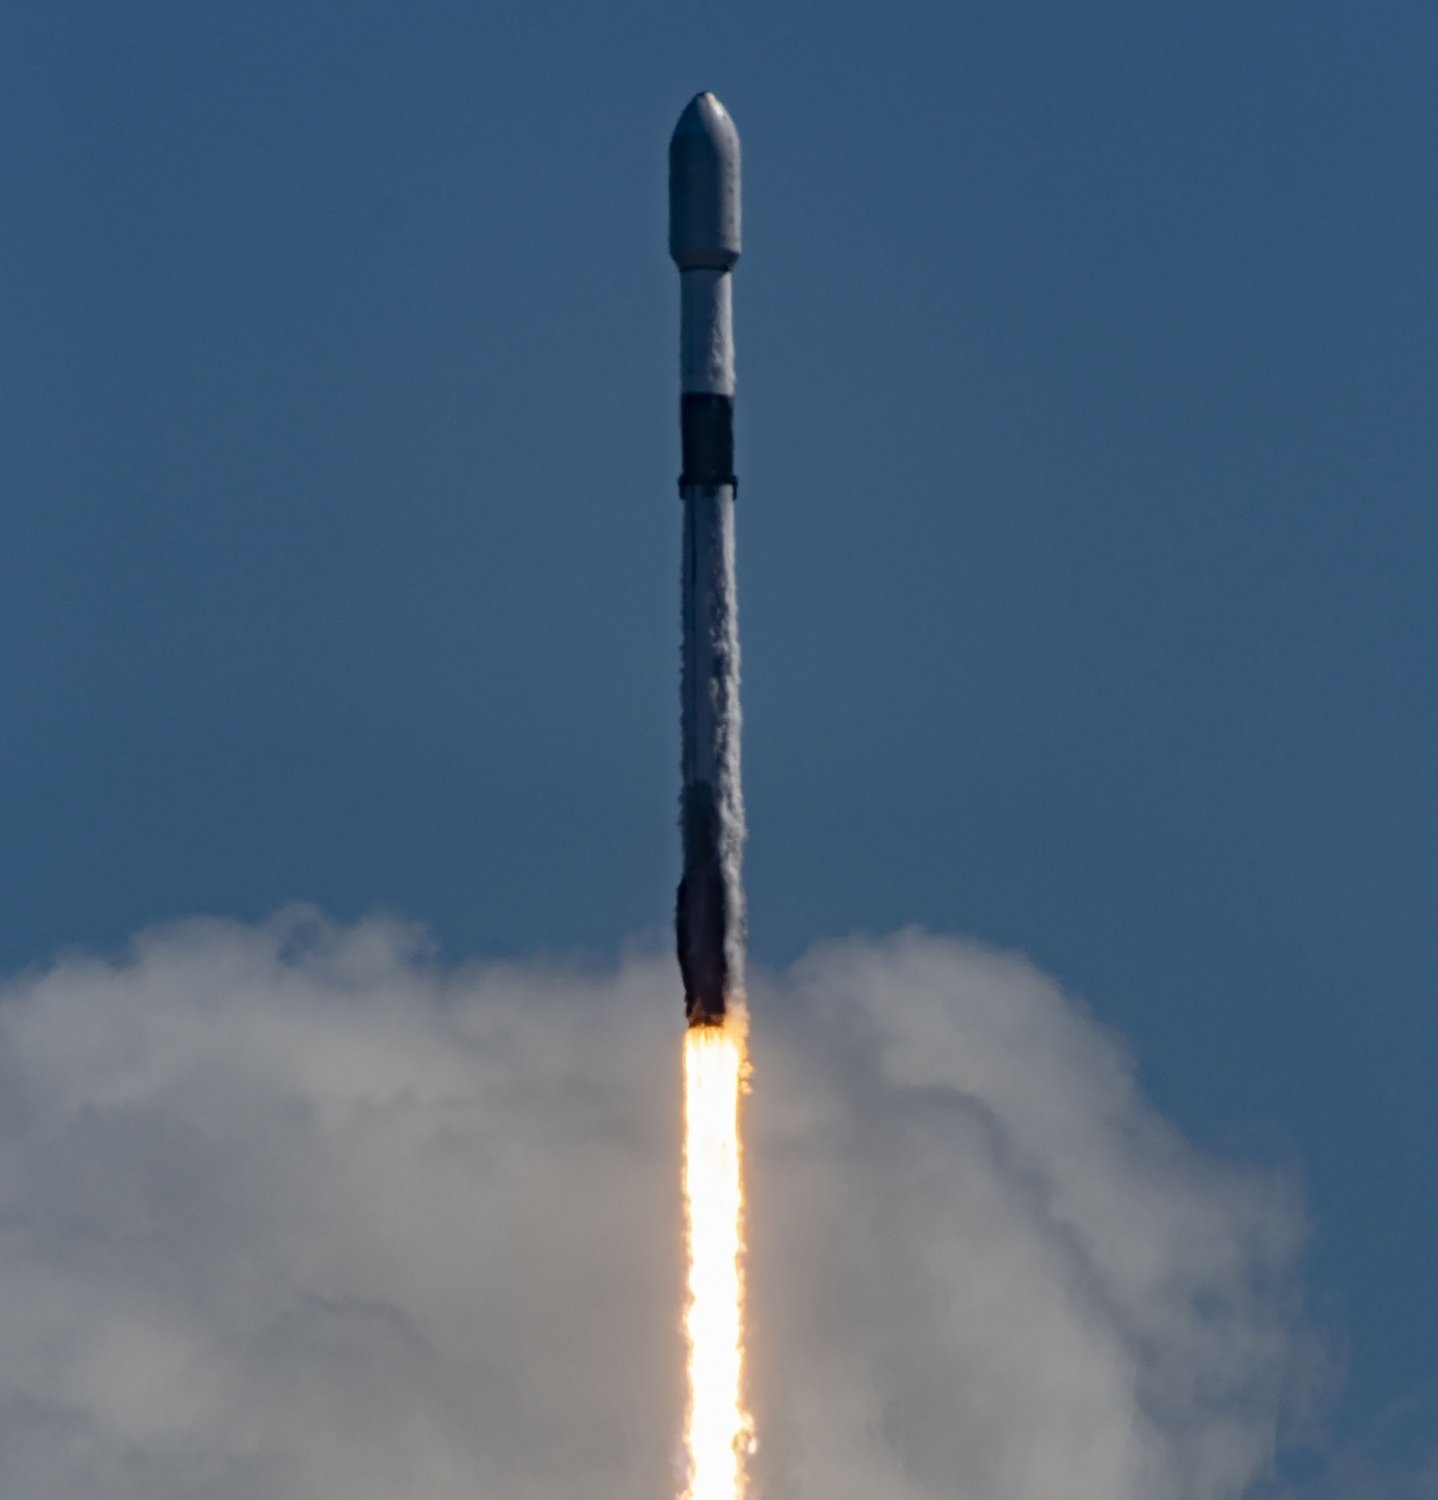 40 OneWeb satellites launched